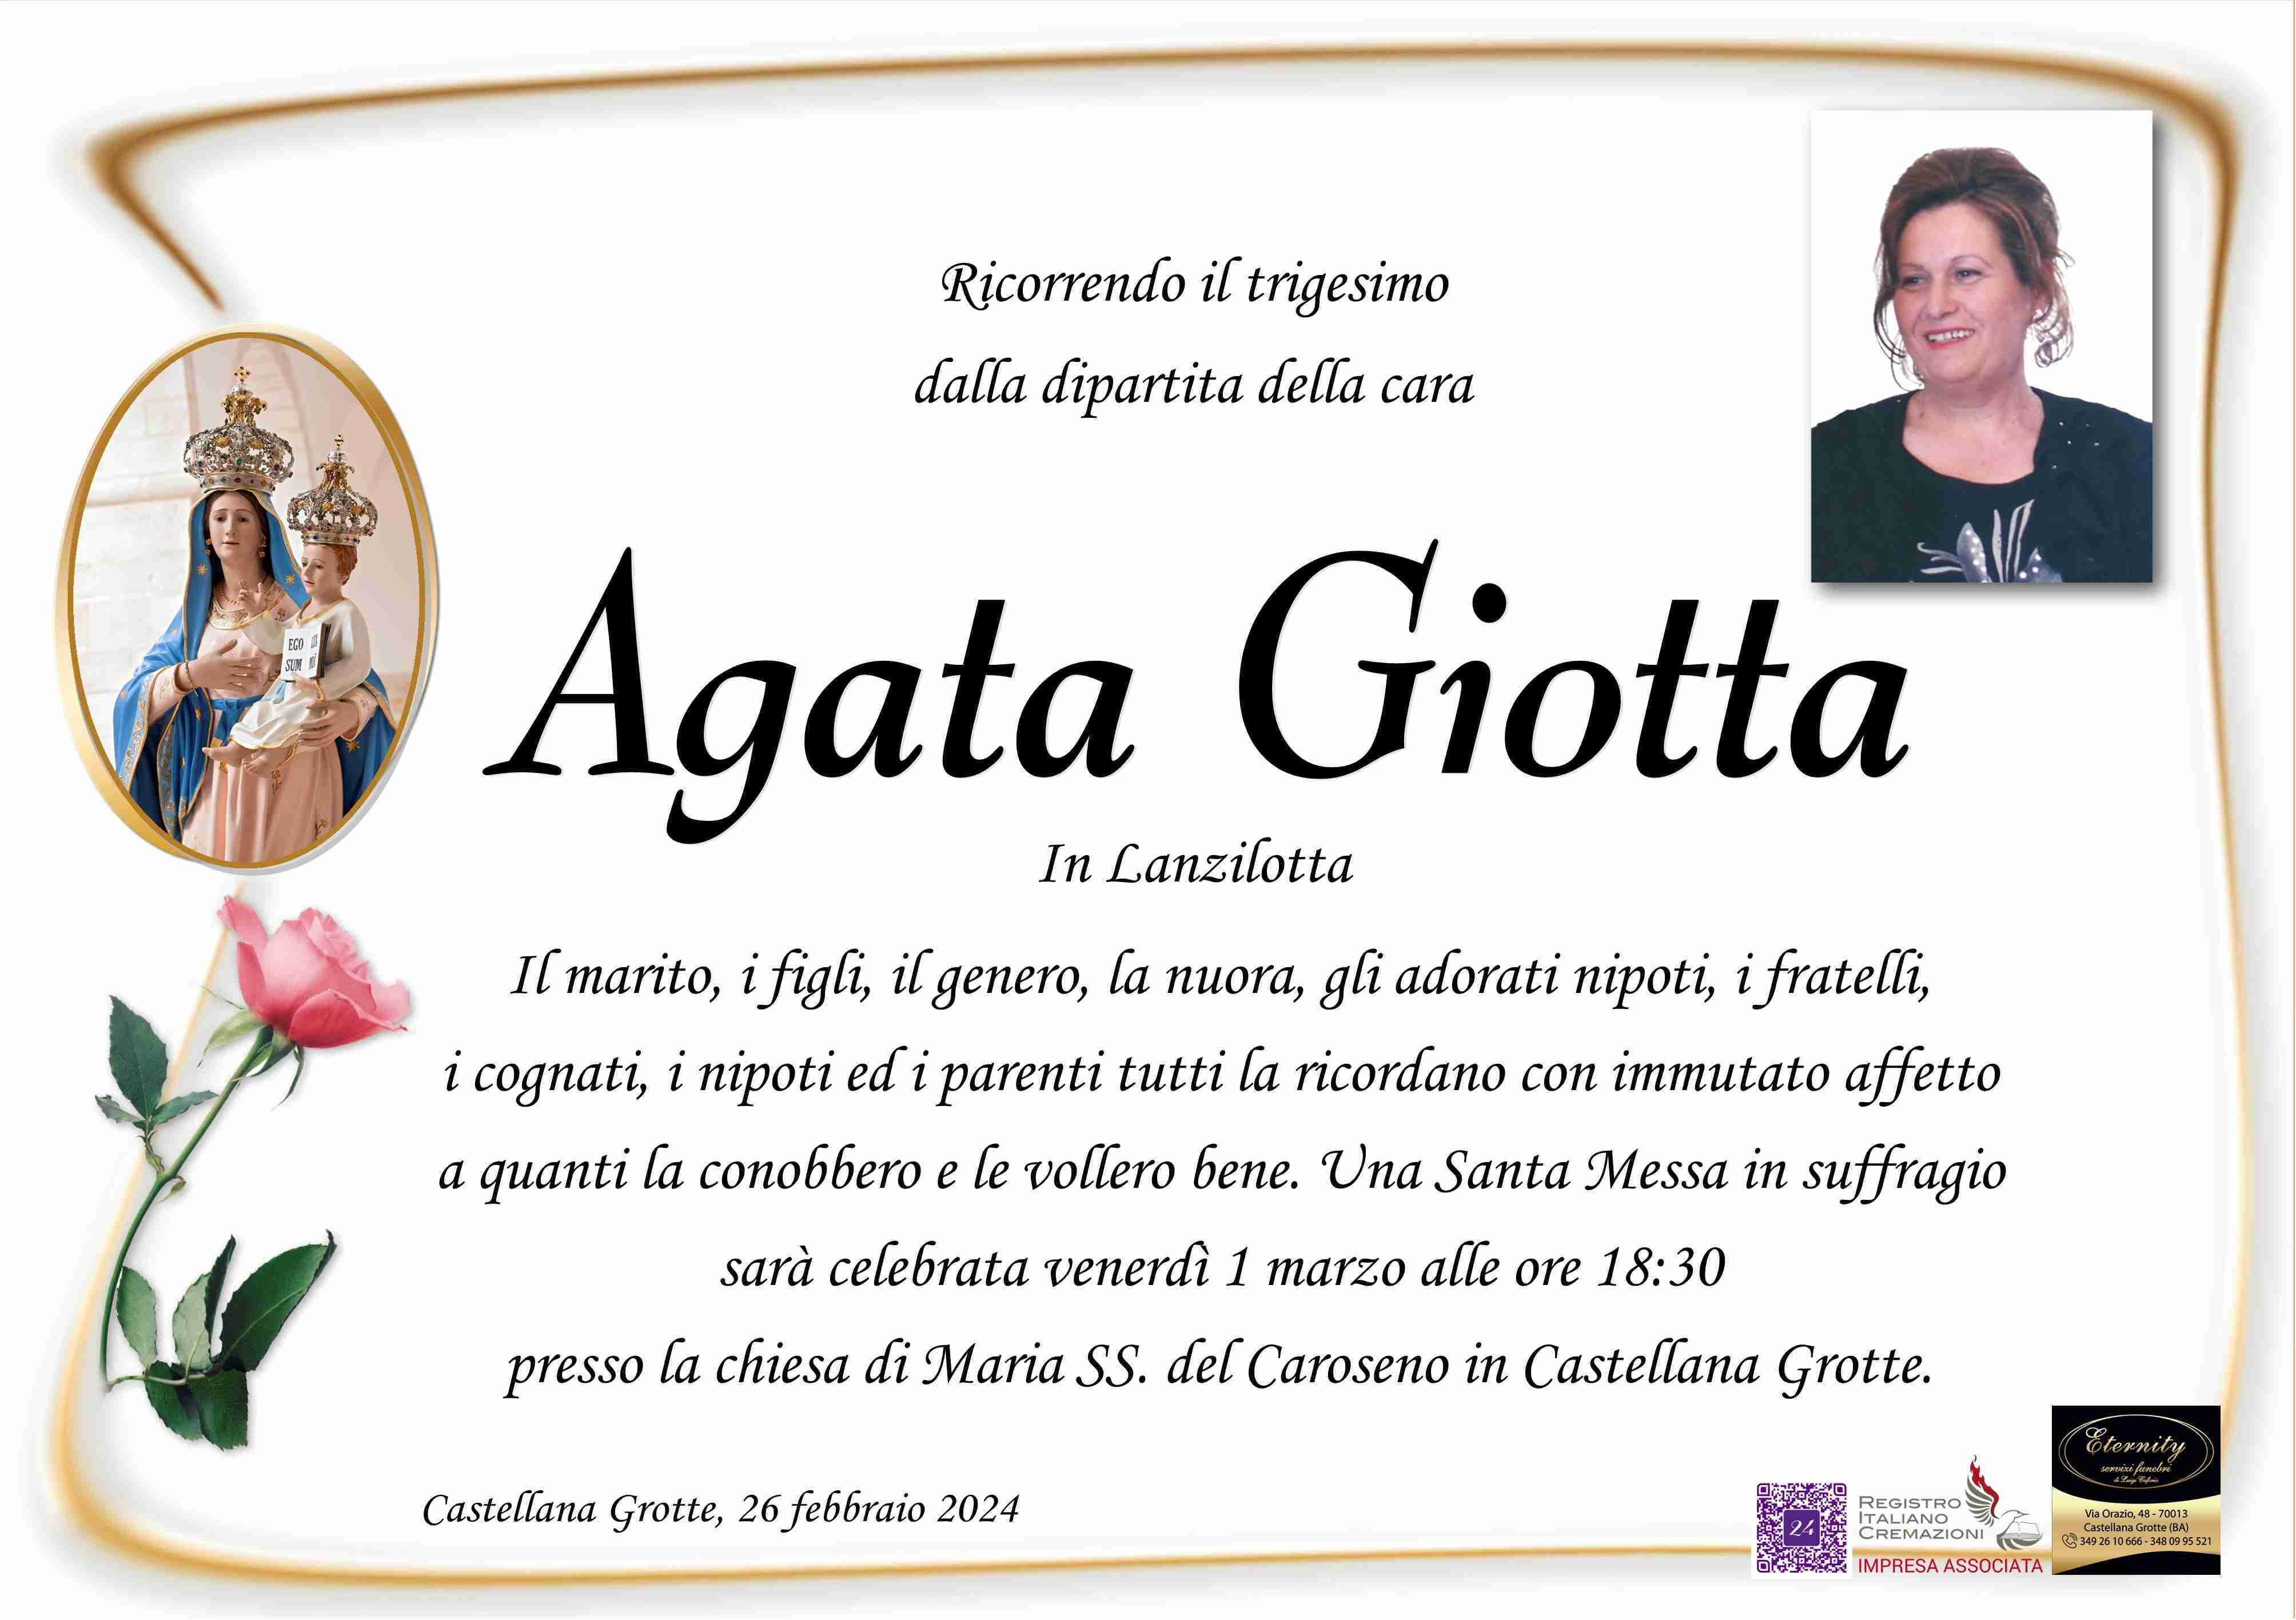 Agata Giotta